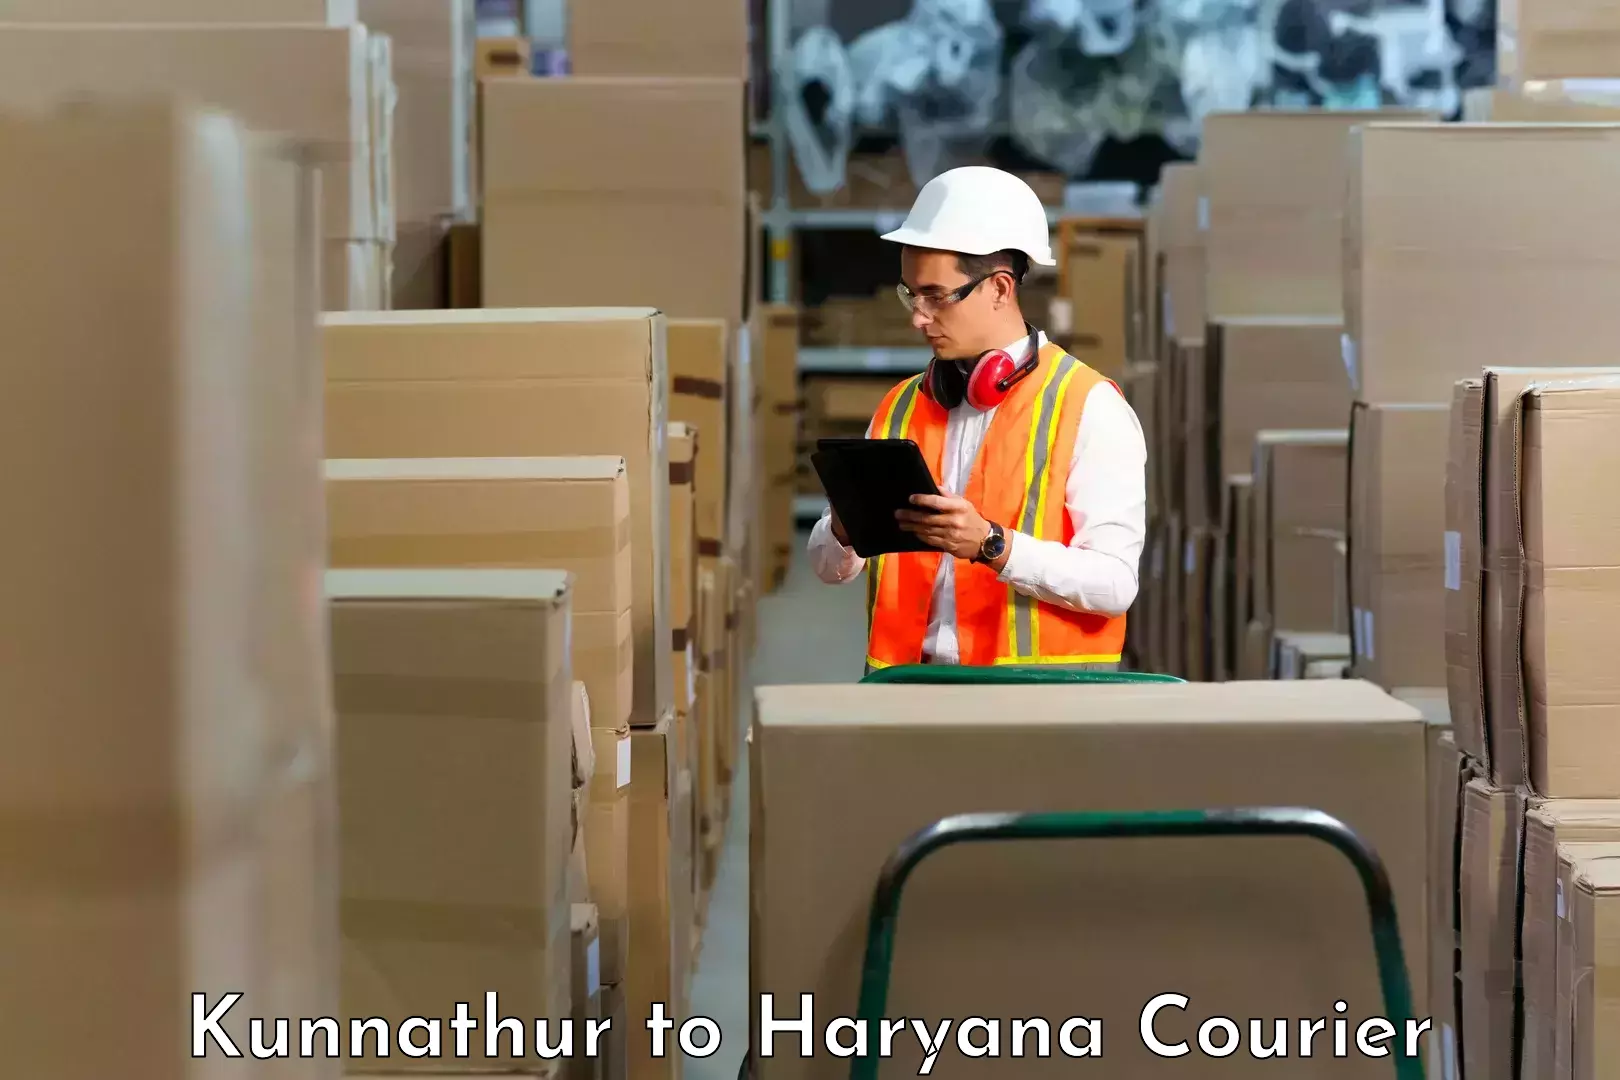 Courier service comparison Kunnathur to Jind